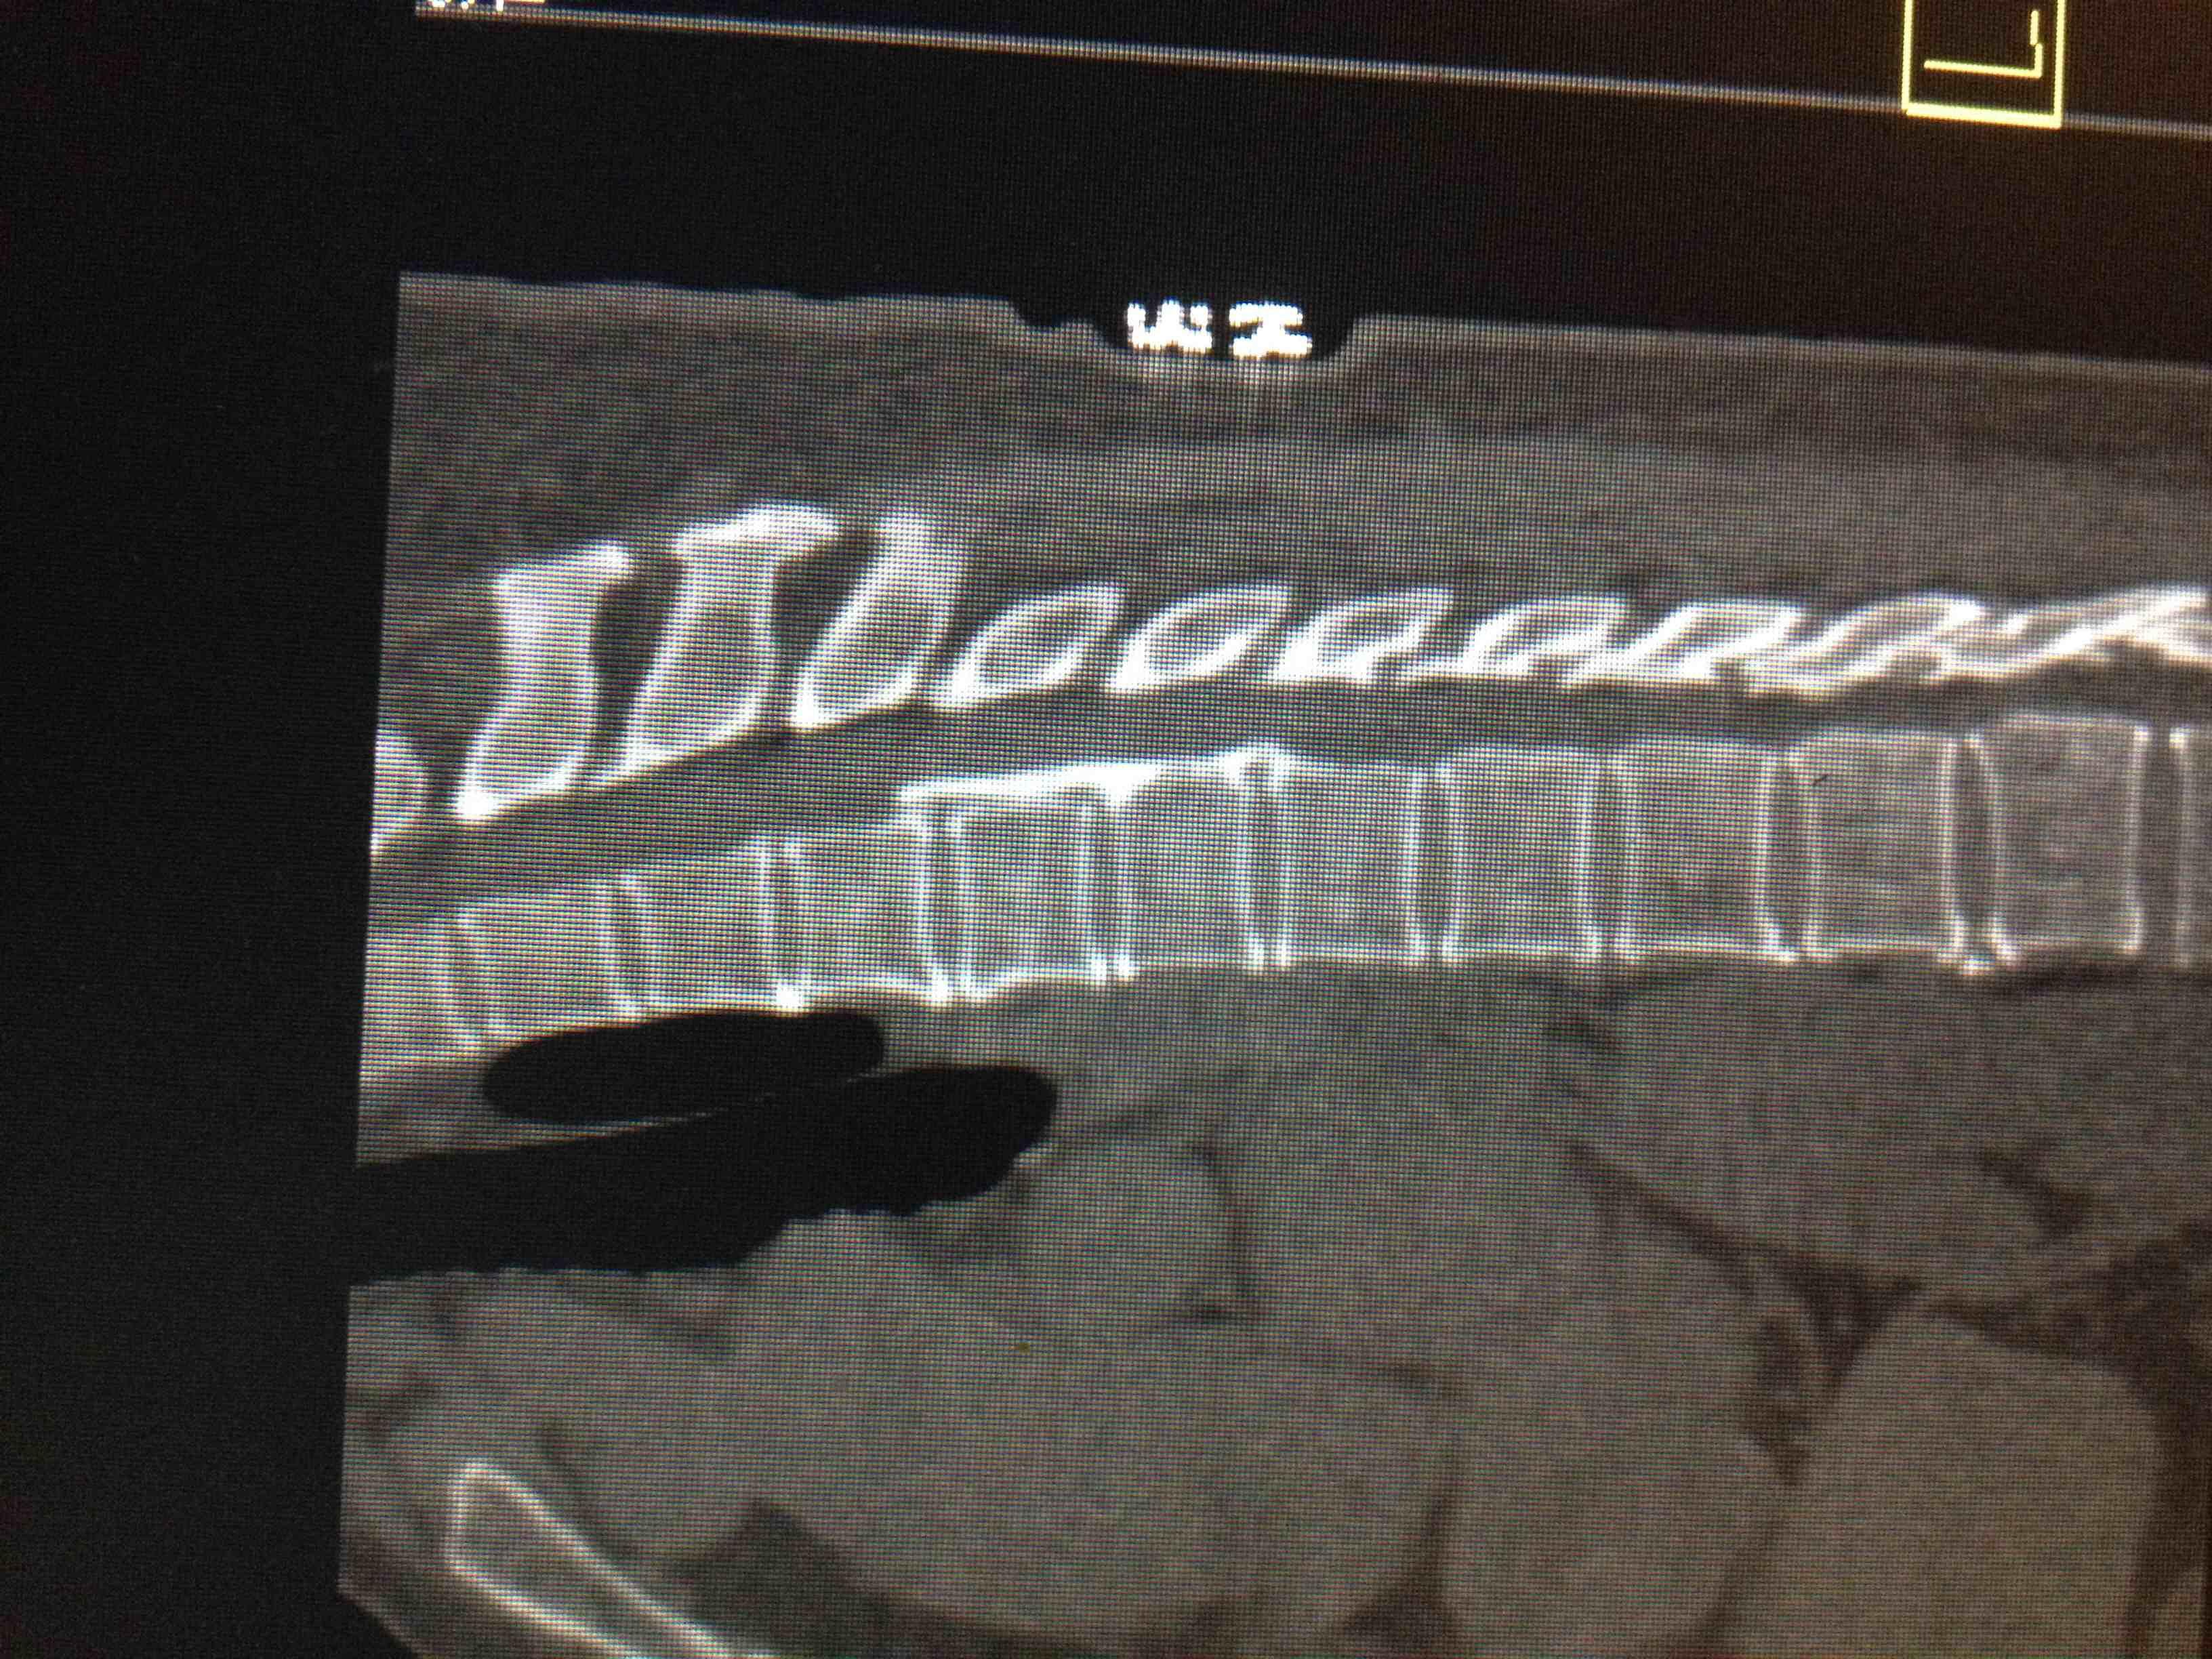 颈椎项韧带钙化图片ct图片